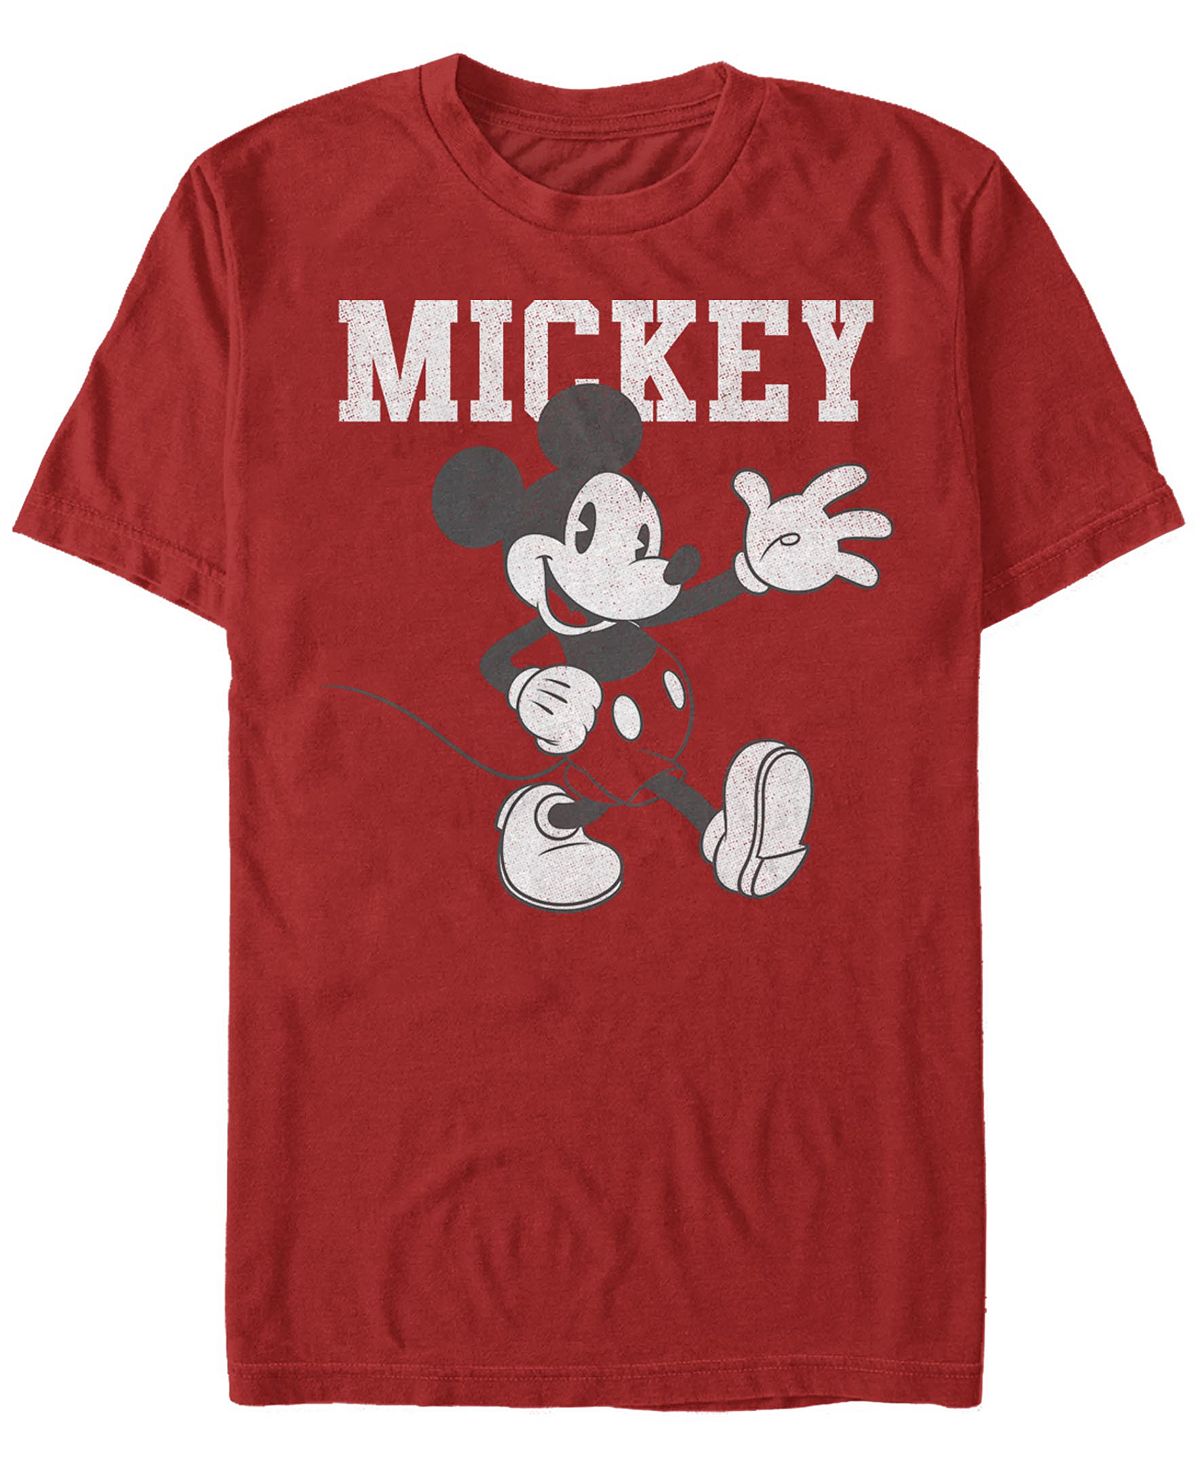 Мужская футболка с круглым вырезом с короткими рукавами simply mickey Fifth Sun, красный мужская футболка mickey irish с короткими рукавами и круглым вырезом fifth sun зеленый